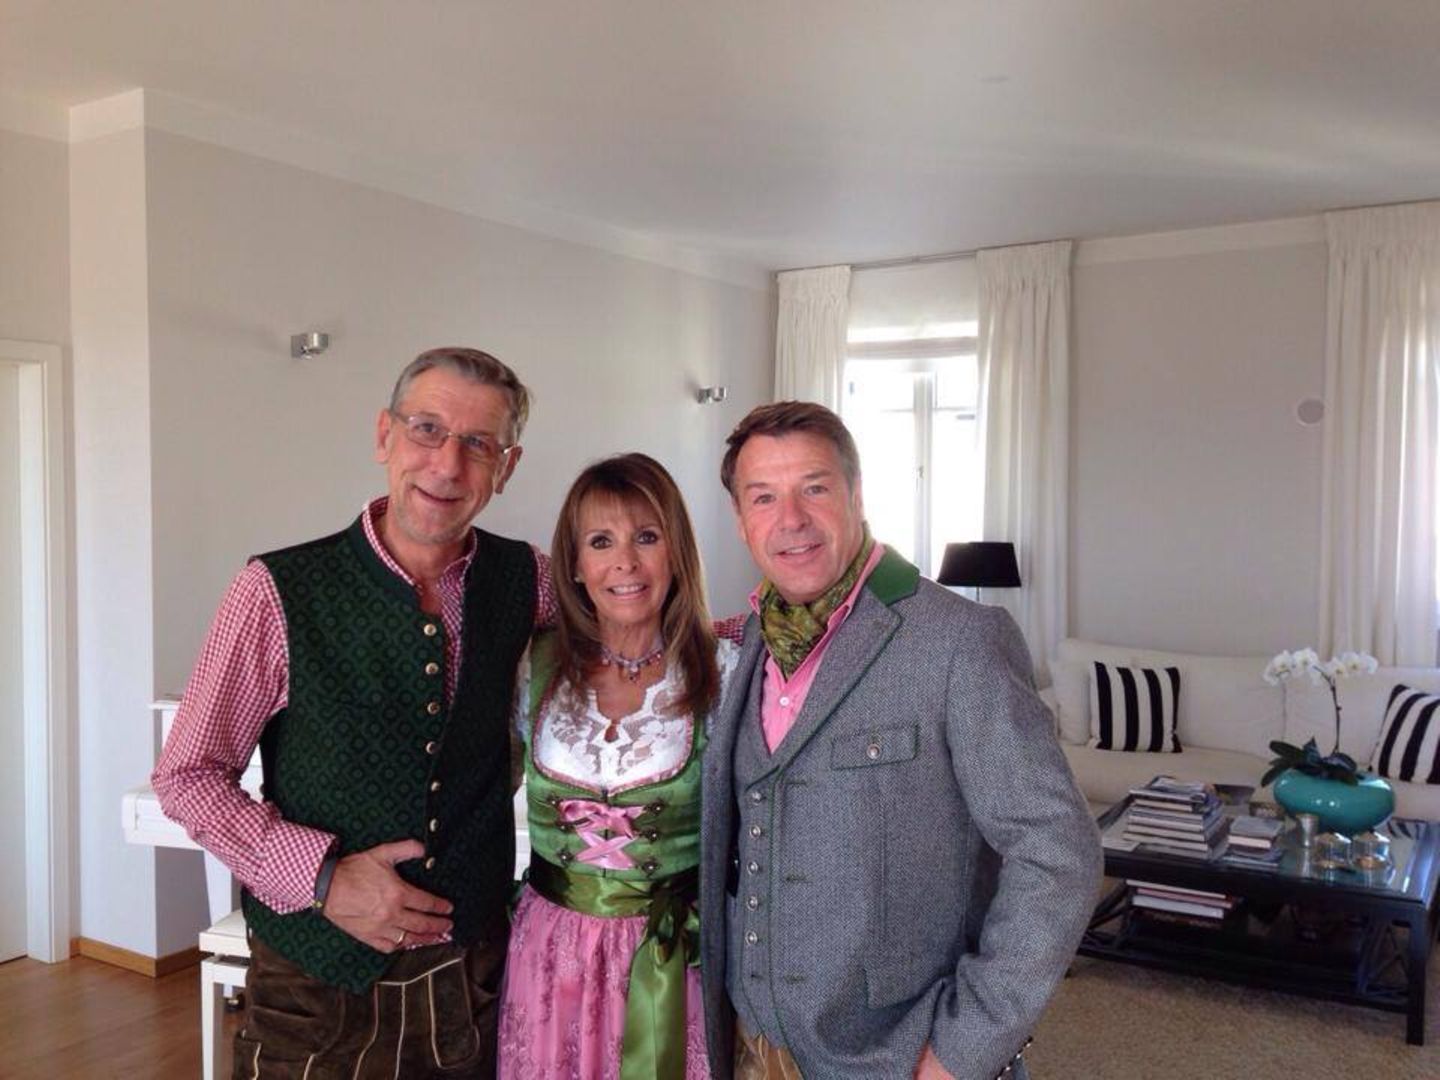 Gleich gehts auf die Wiesn. Patrick Lindner macht mit Sängerin Ireen Sheer und seinem Freund Peter Schäfer ein Foto als Erinnerung.